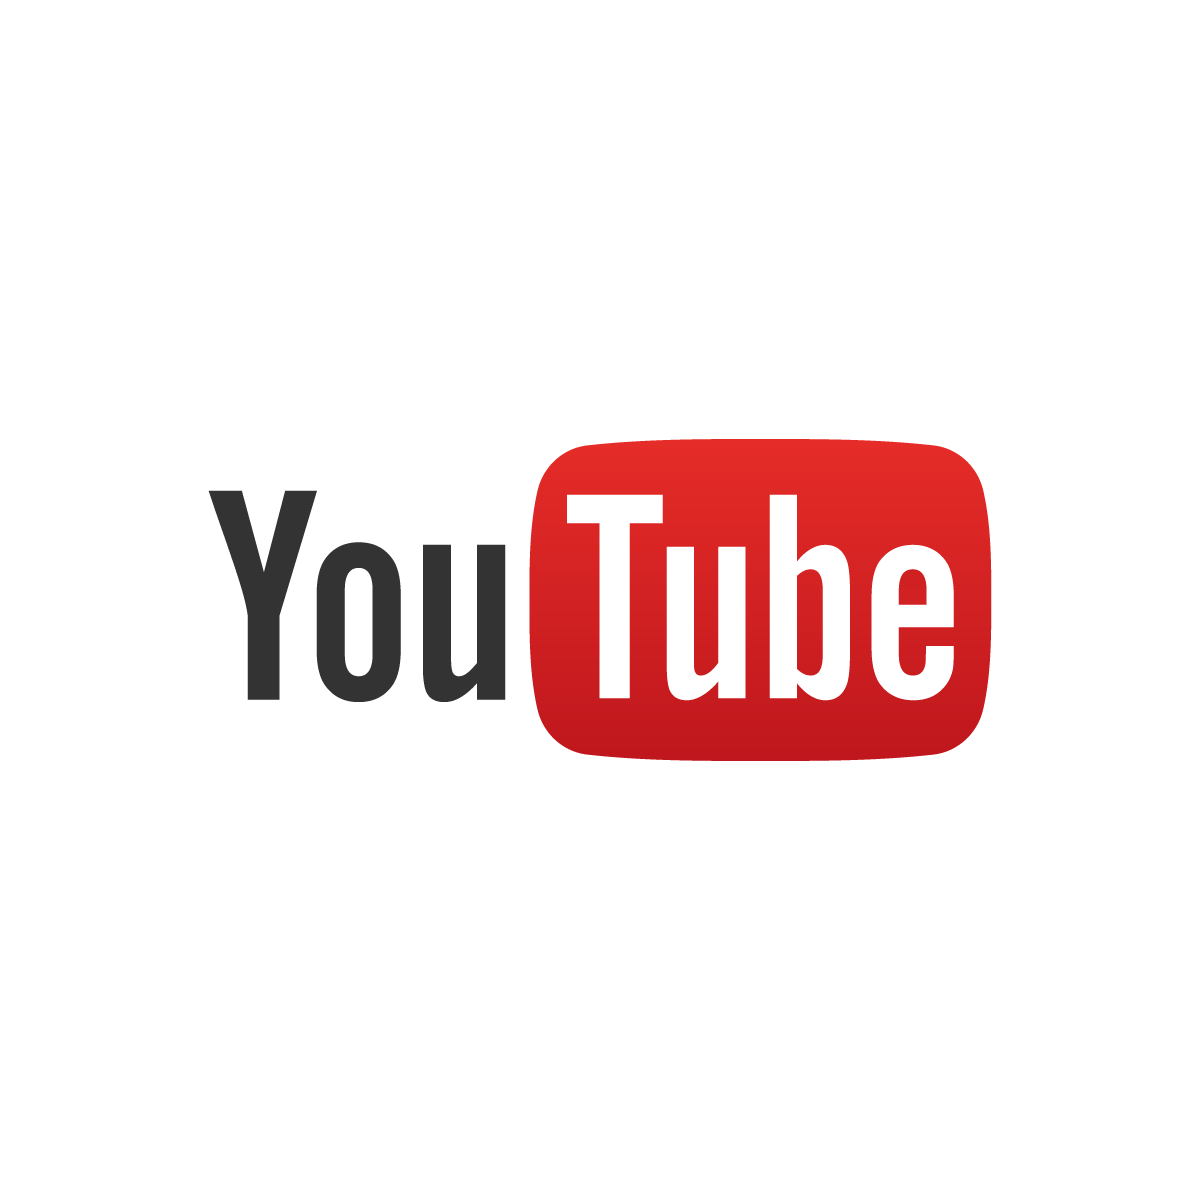 A YouTube ötvenezer, terrorista propagandát tartalmazó videót távolított el